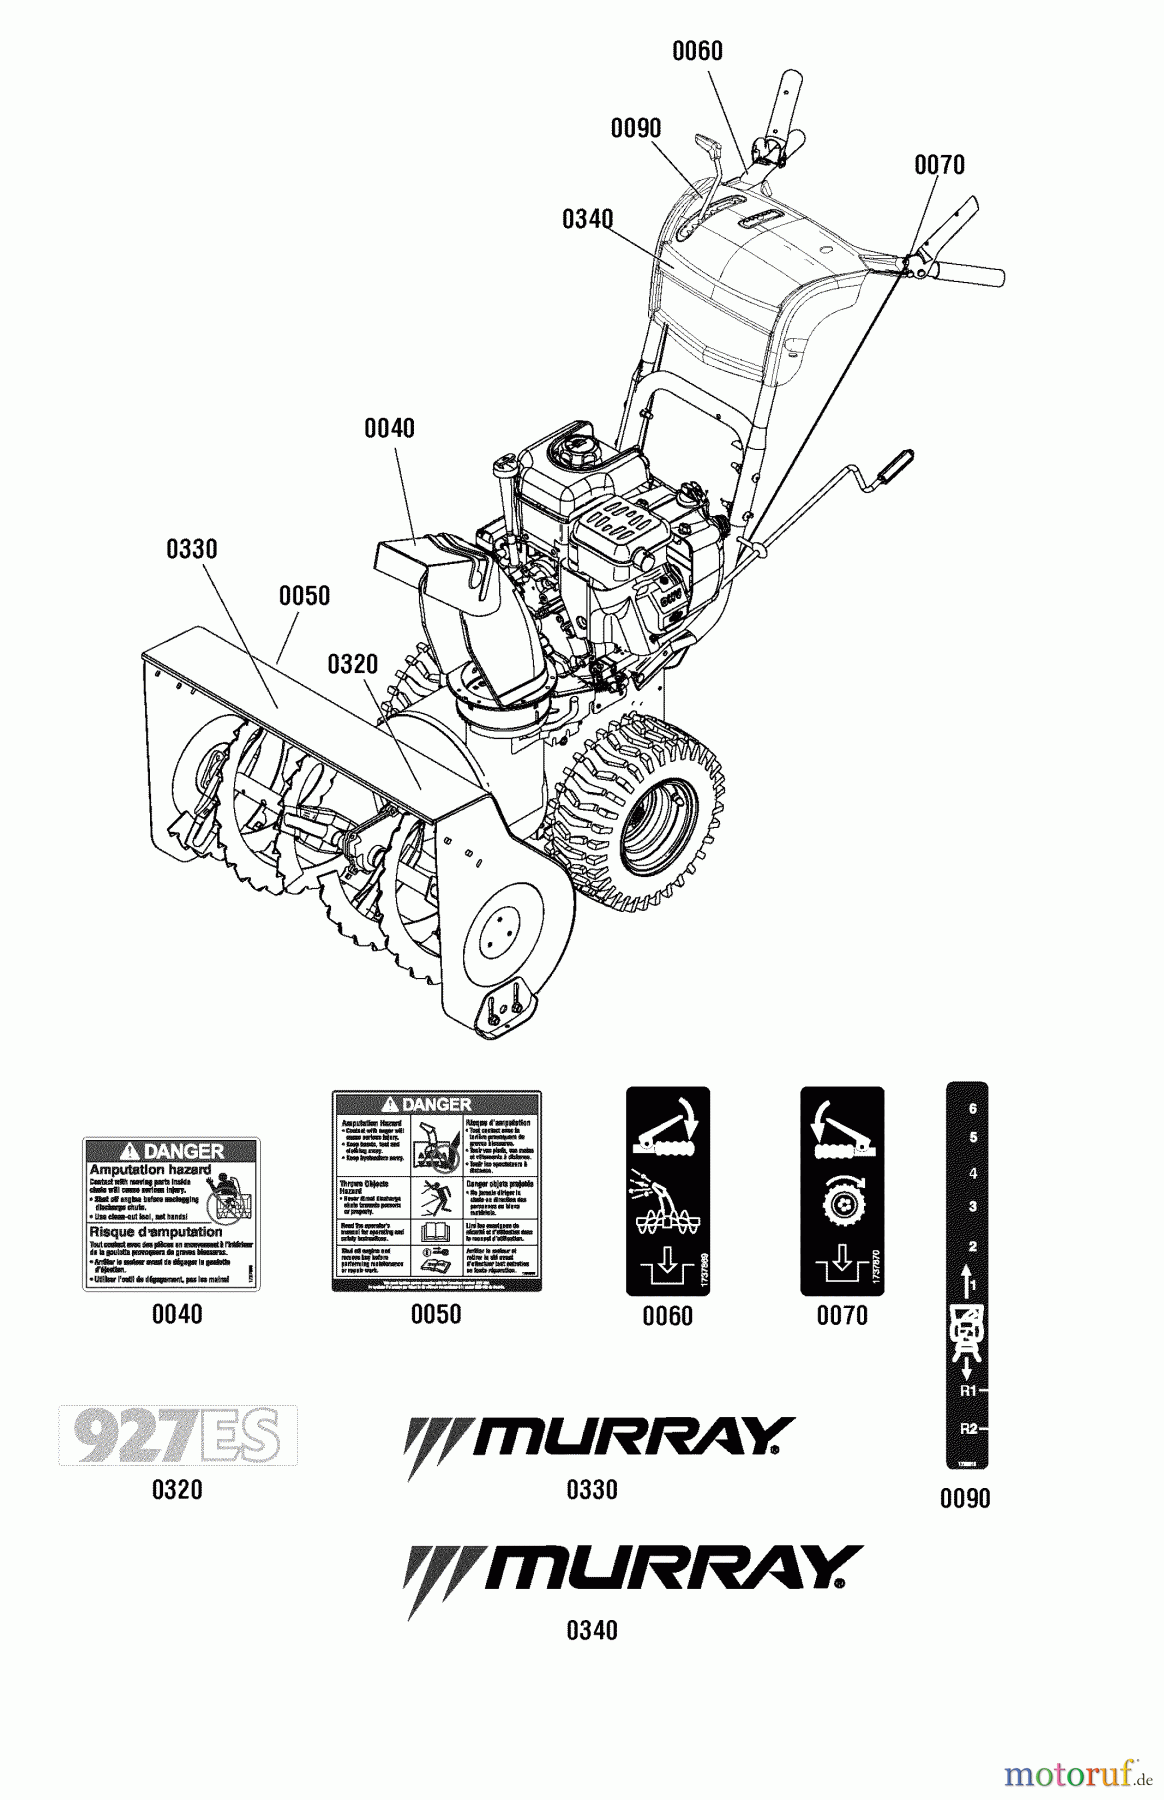  Murray Schneefräsen 927ES (1696028) - Murray 27